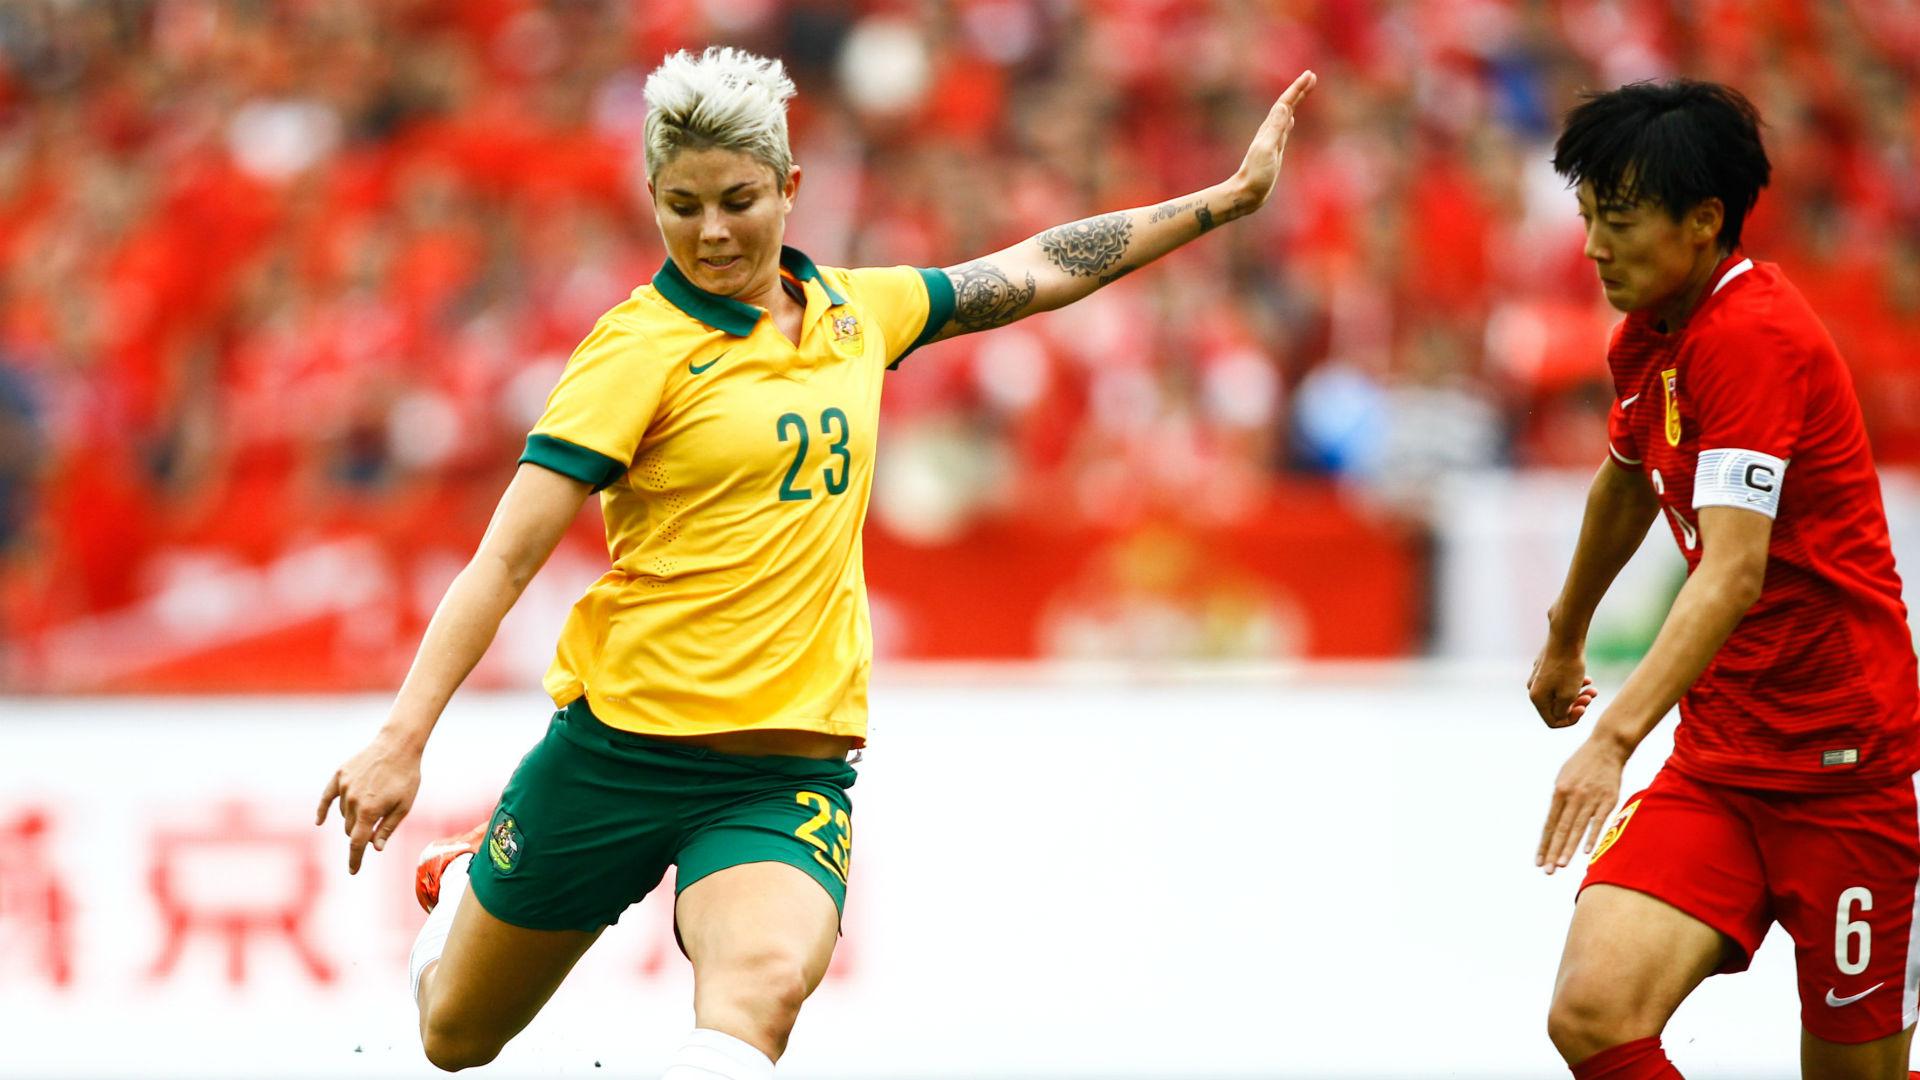 Australia women's soccer team hammered